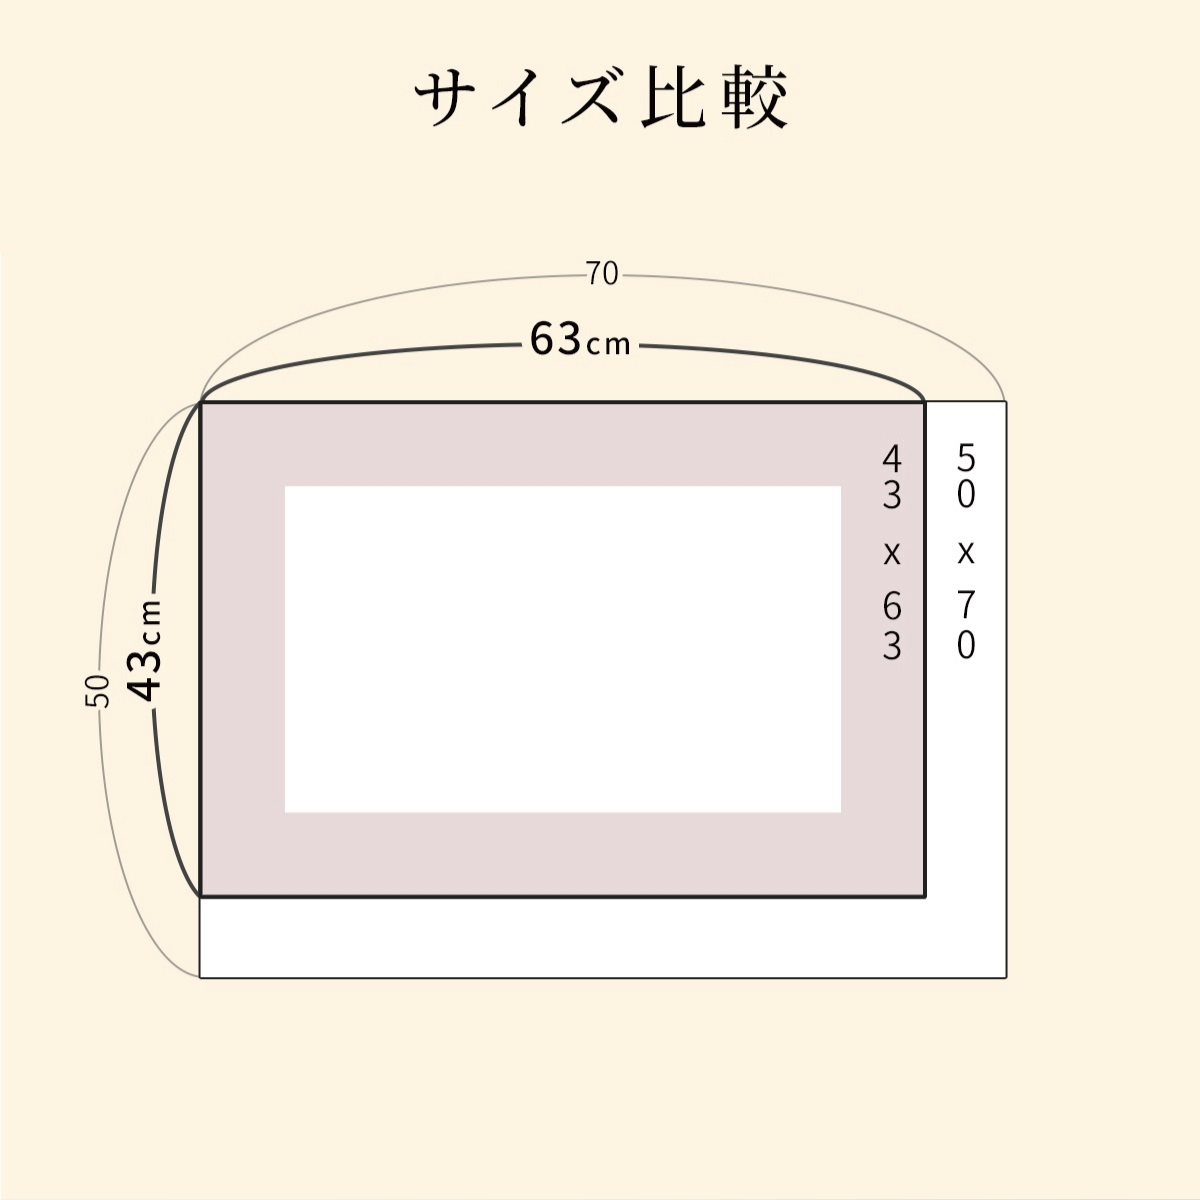 ピローケースはレギュラーサイズ（43×63cm）、ラージサイズ（50×70cm）の2サイズ展開